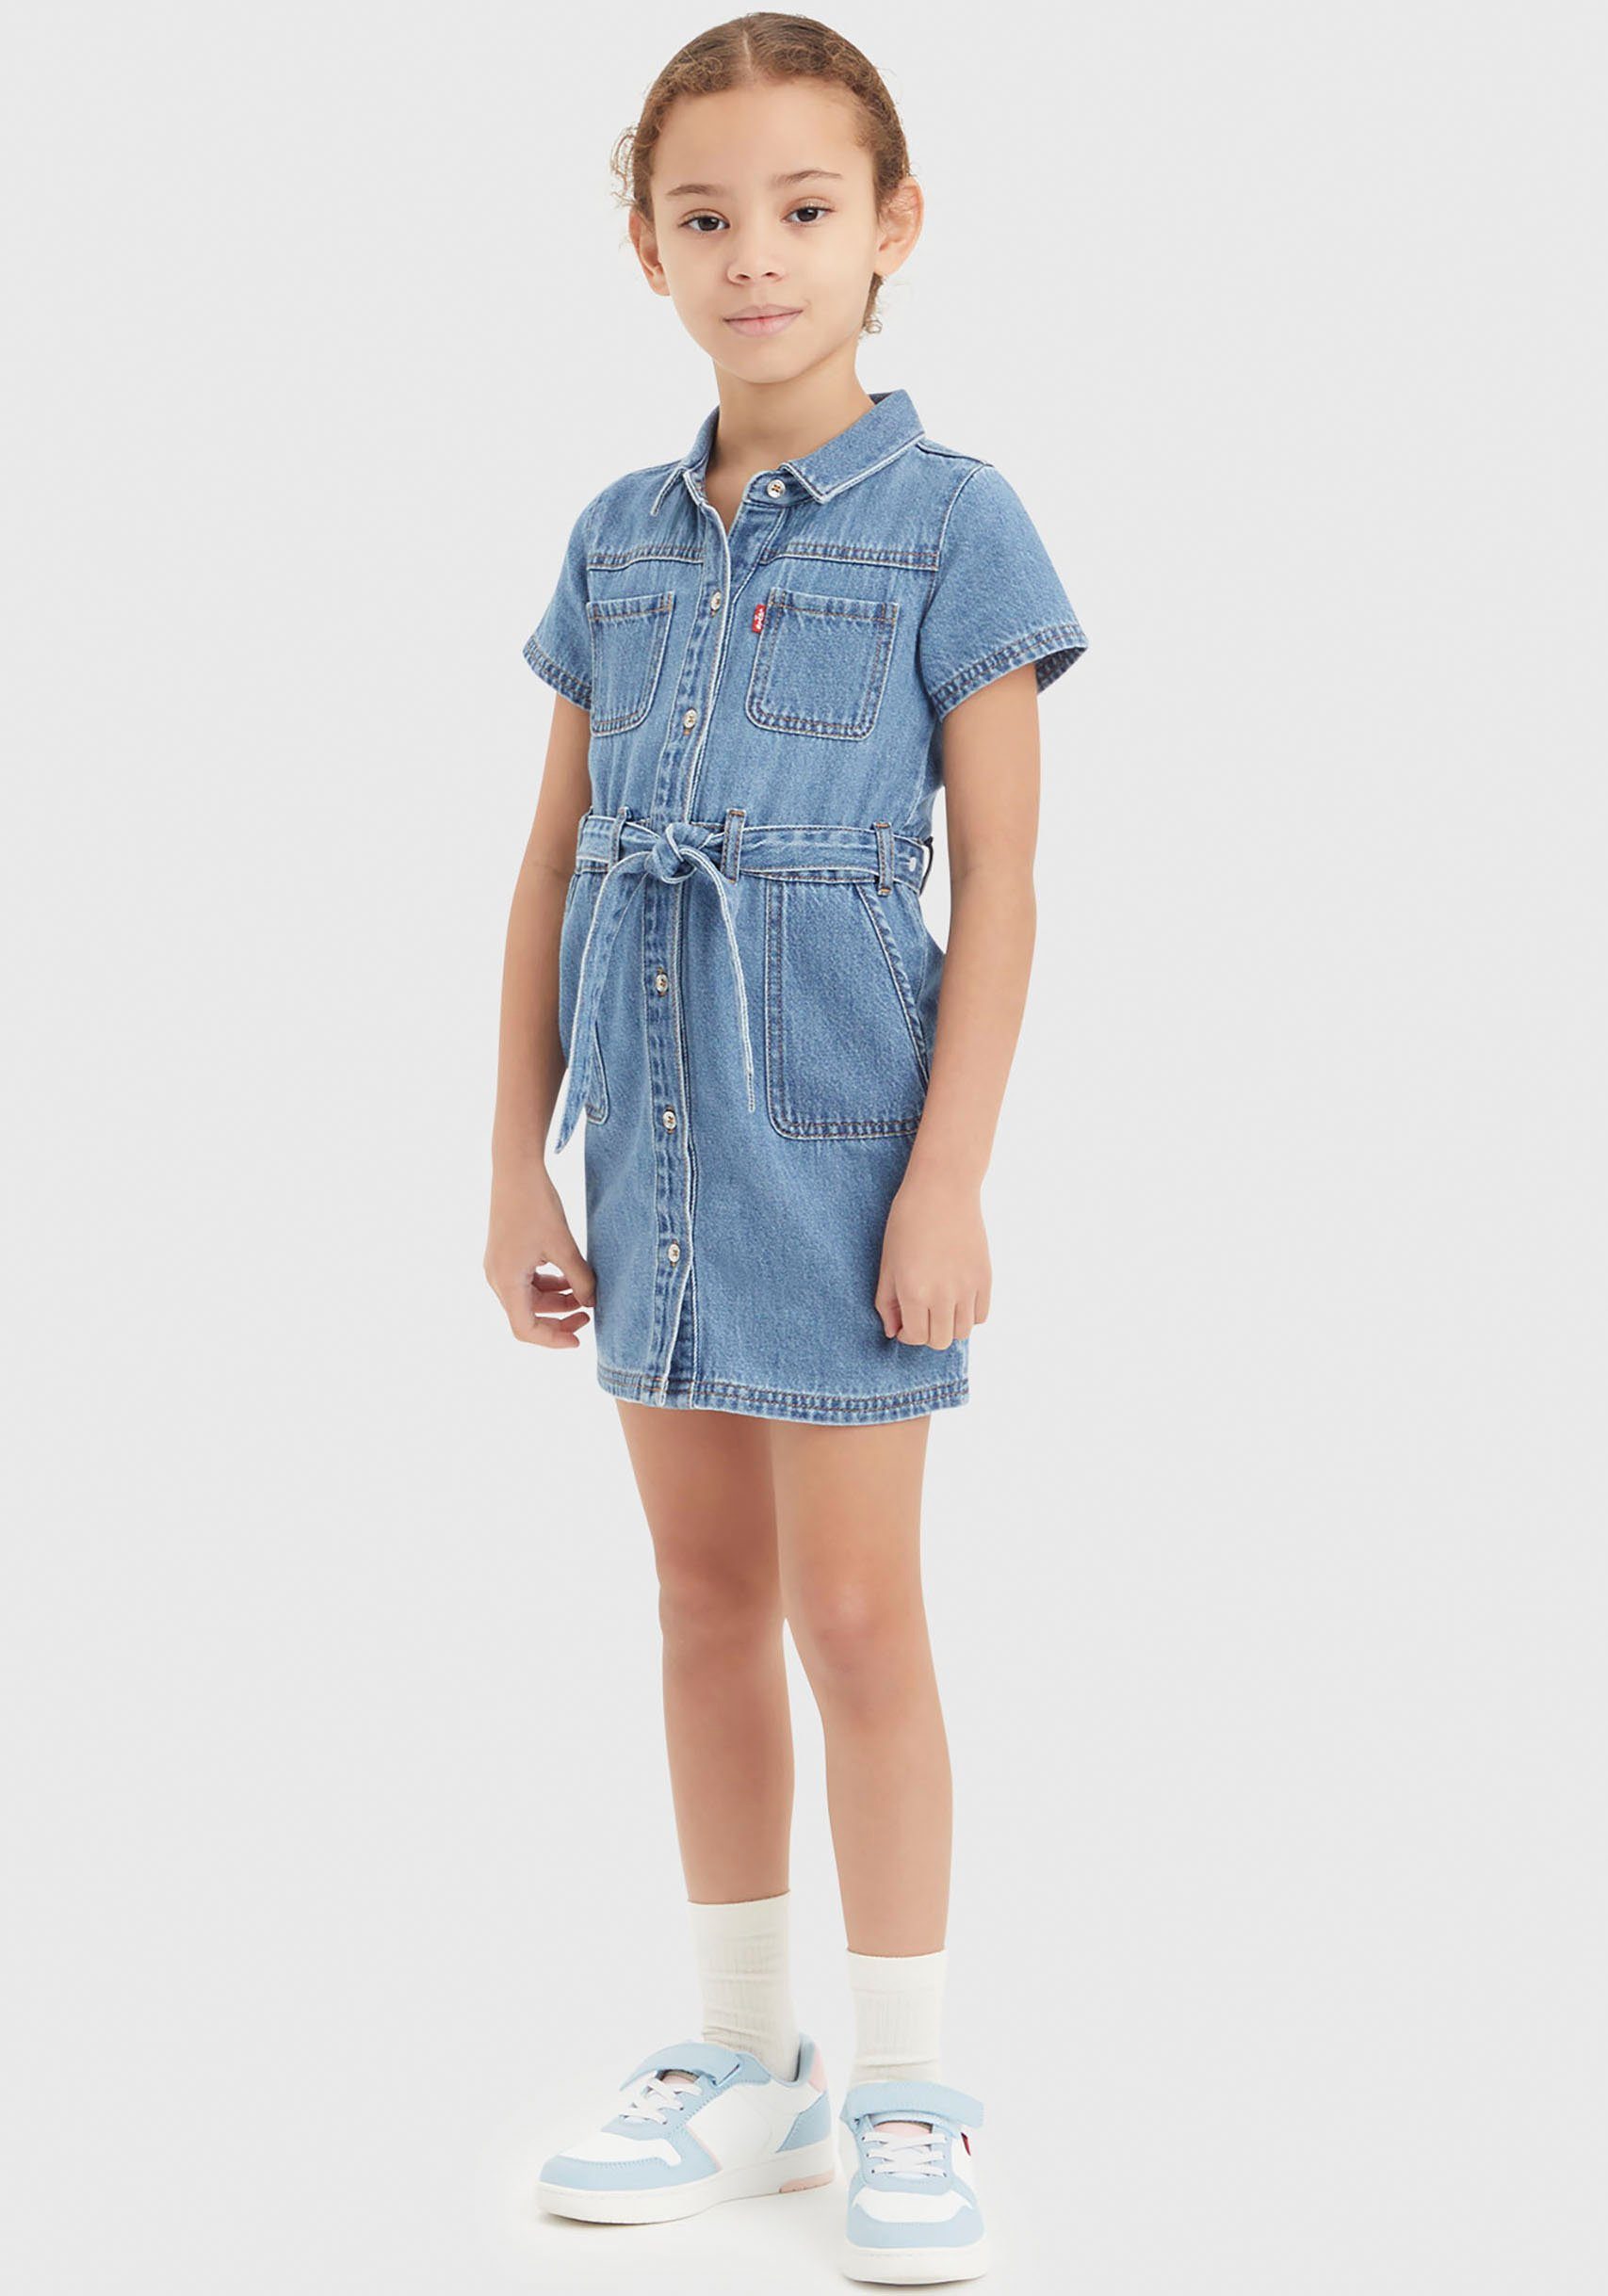 Levi's Kidswear Jeans jurk for girls